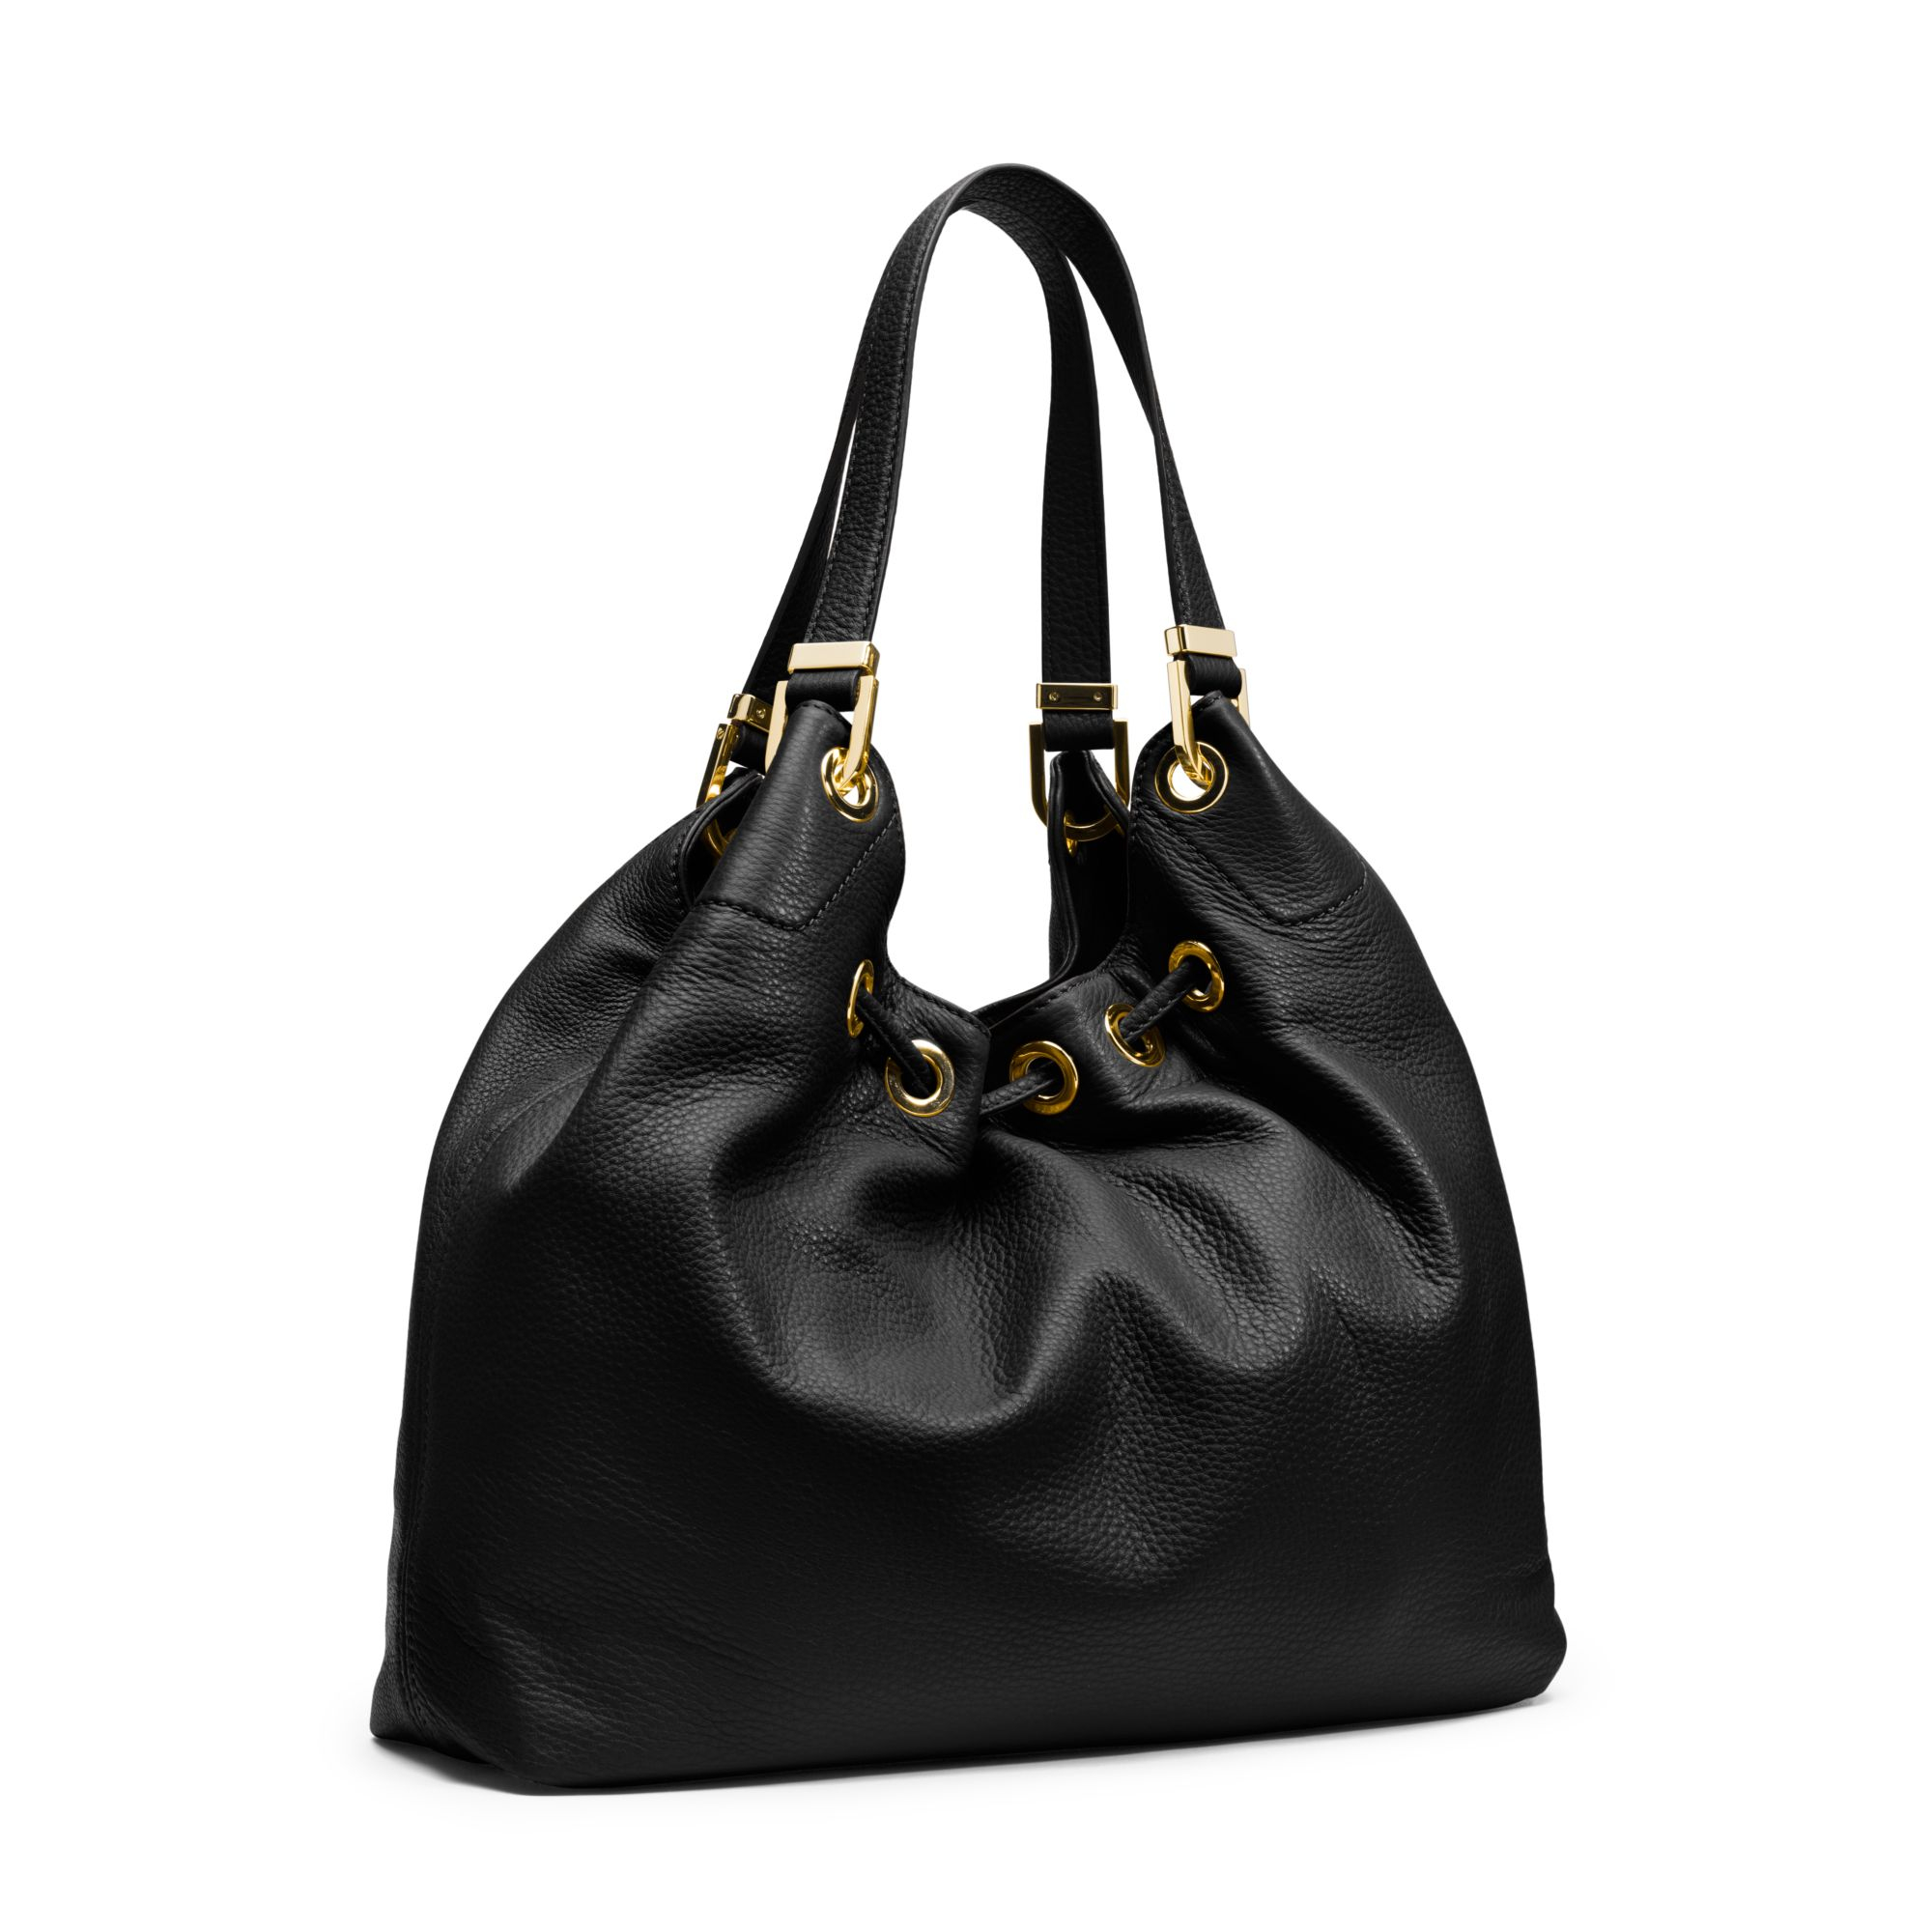 Lyst - Michael Kors Camden Large Leather Shoulder Bag in Black